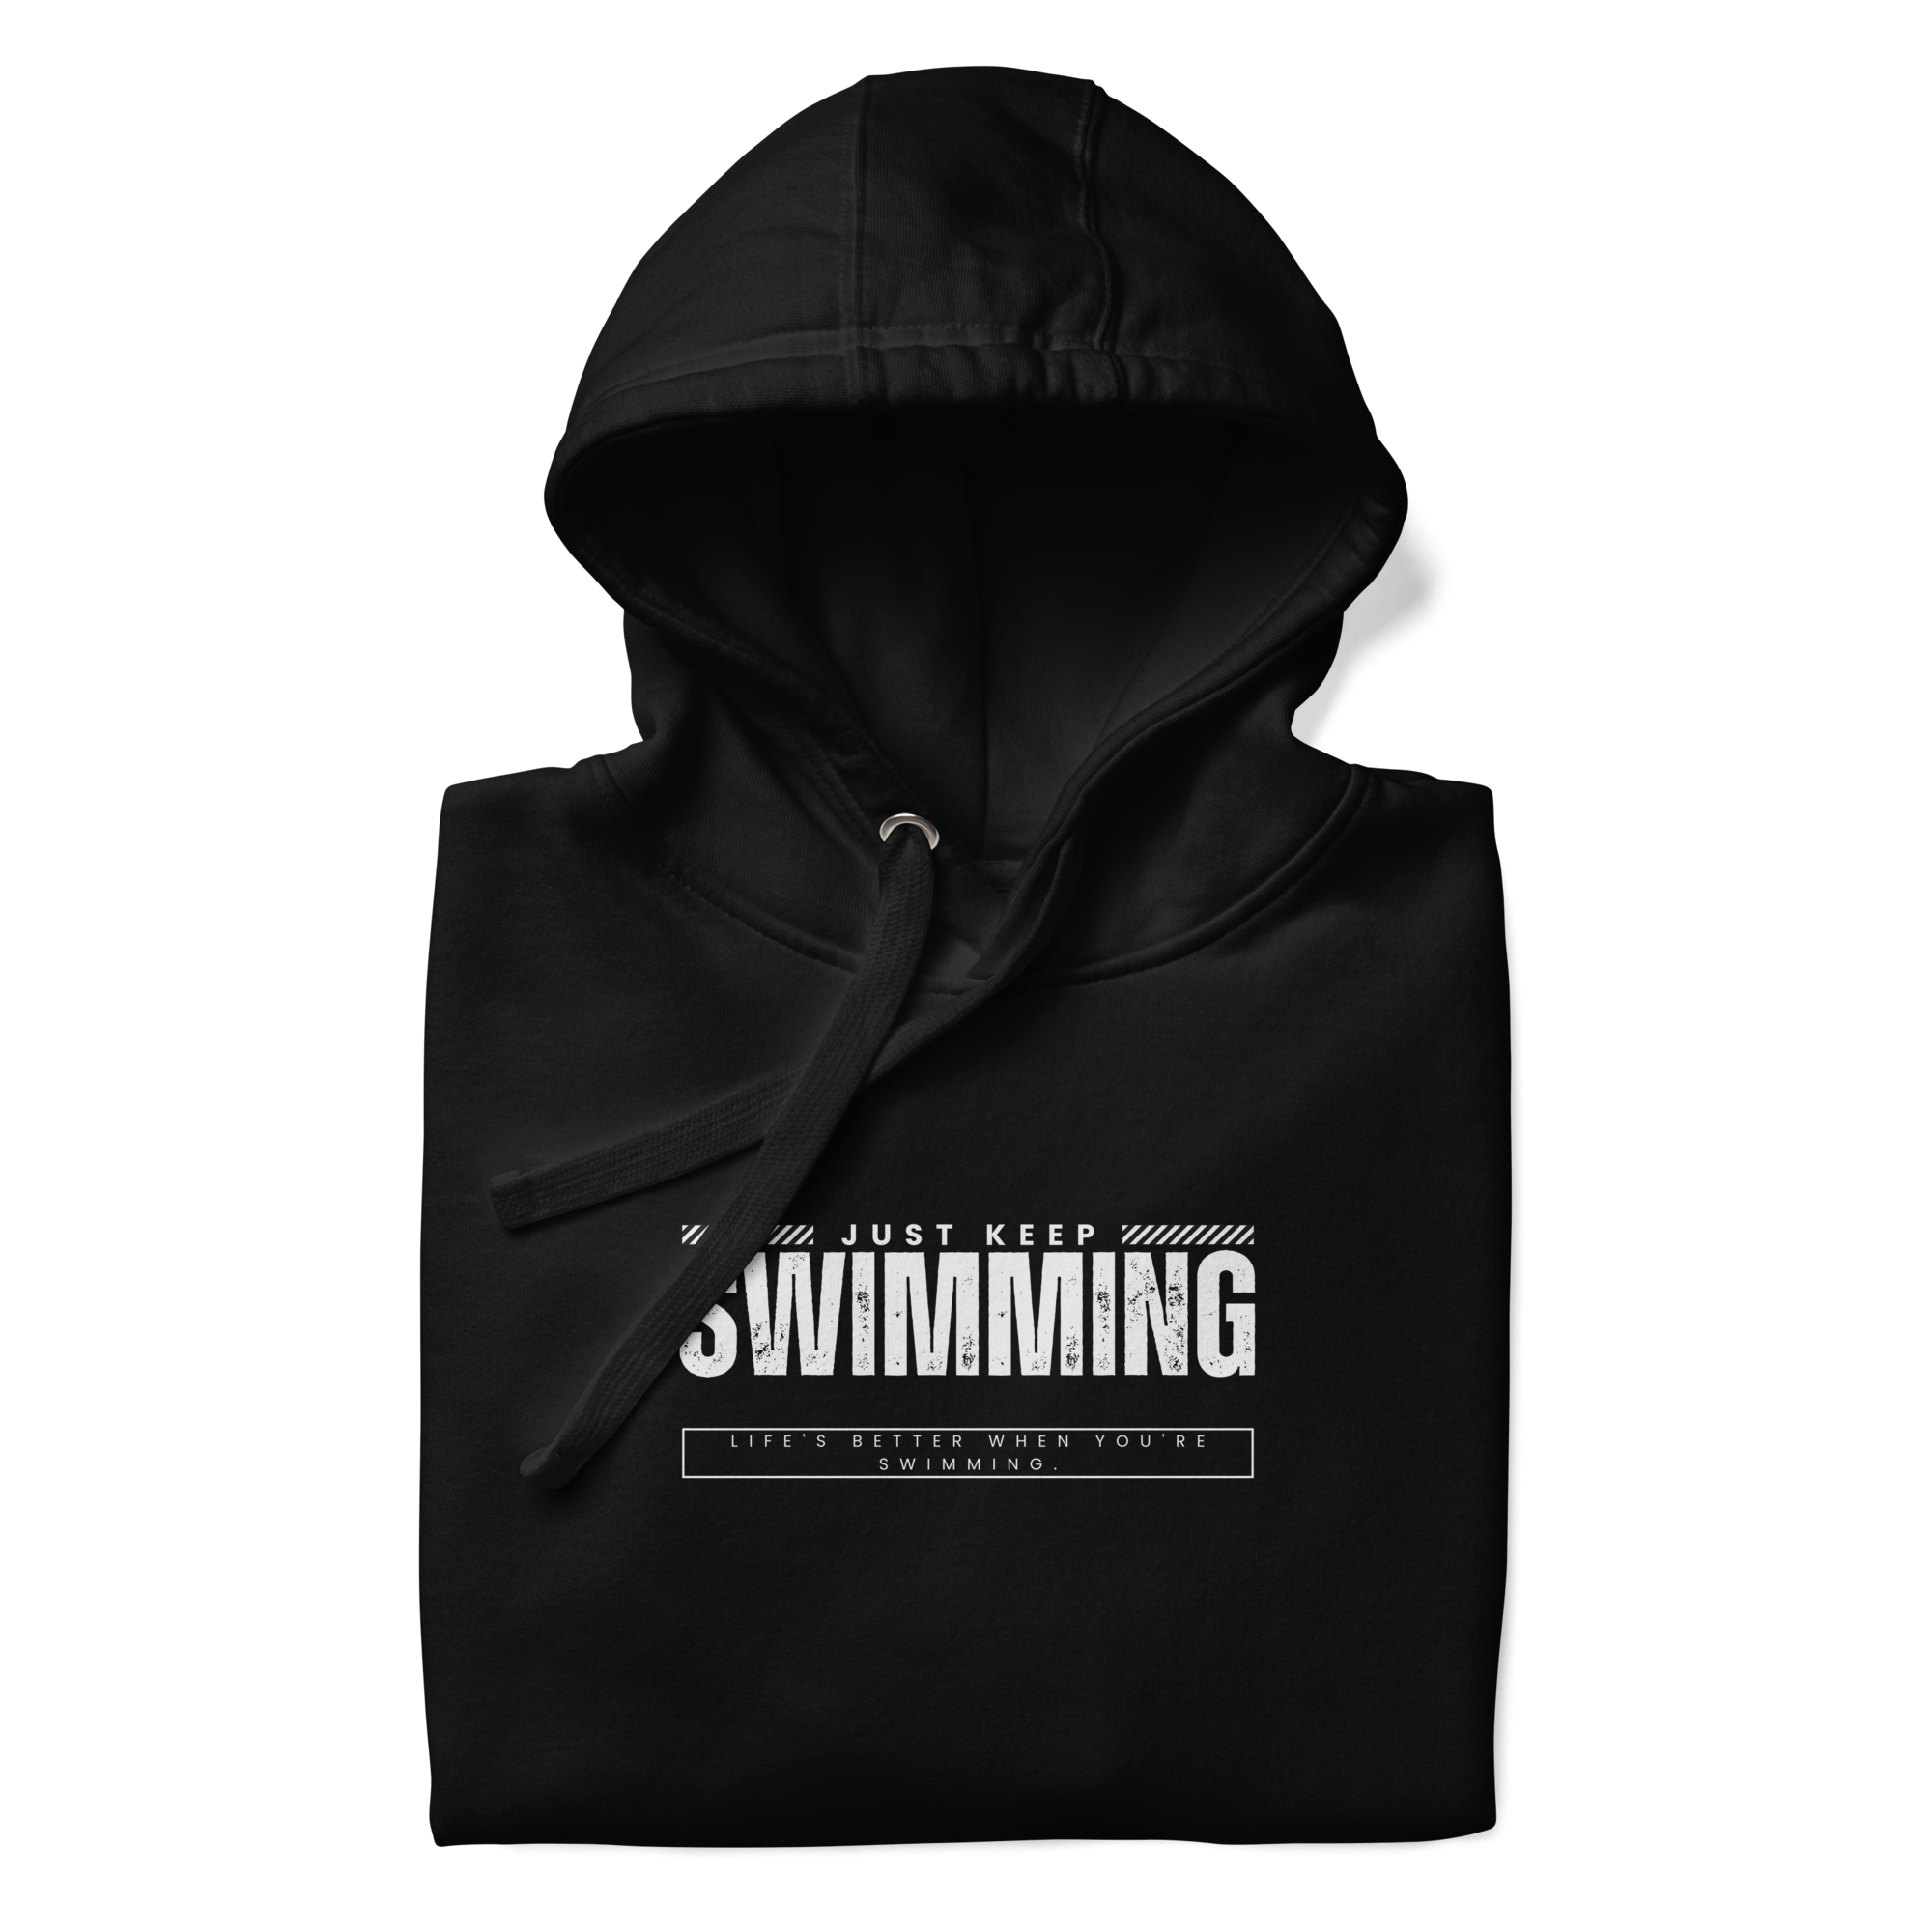 Swimmer hoodie